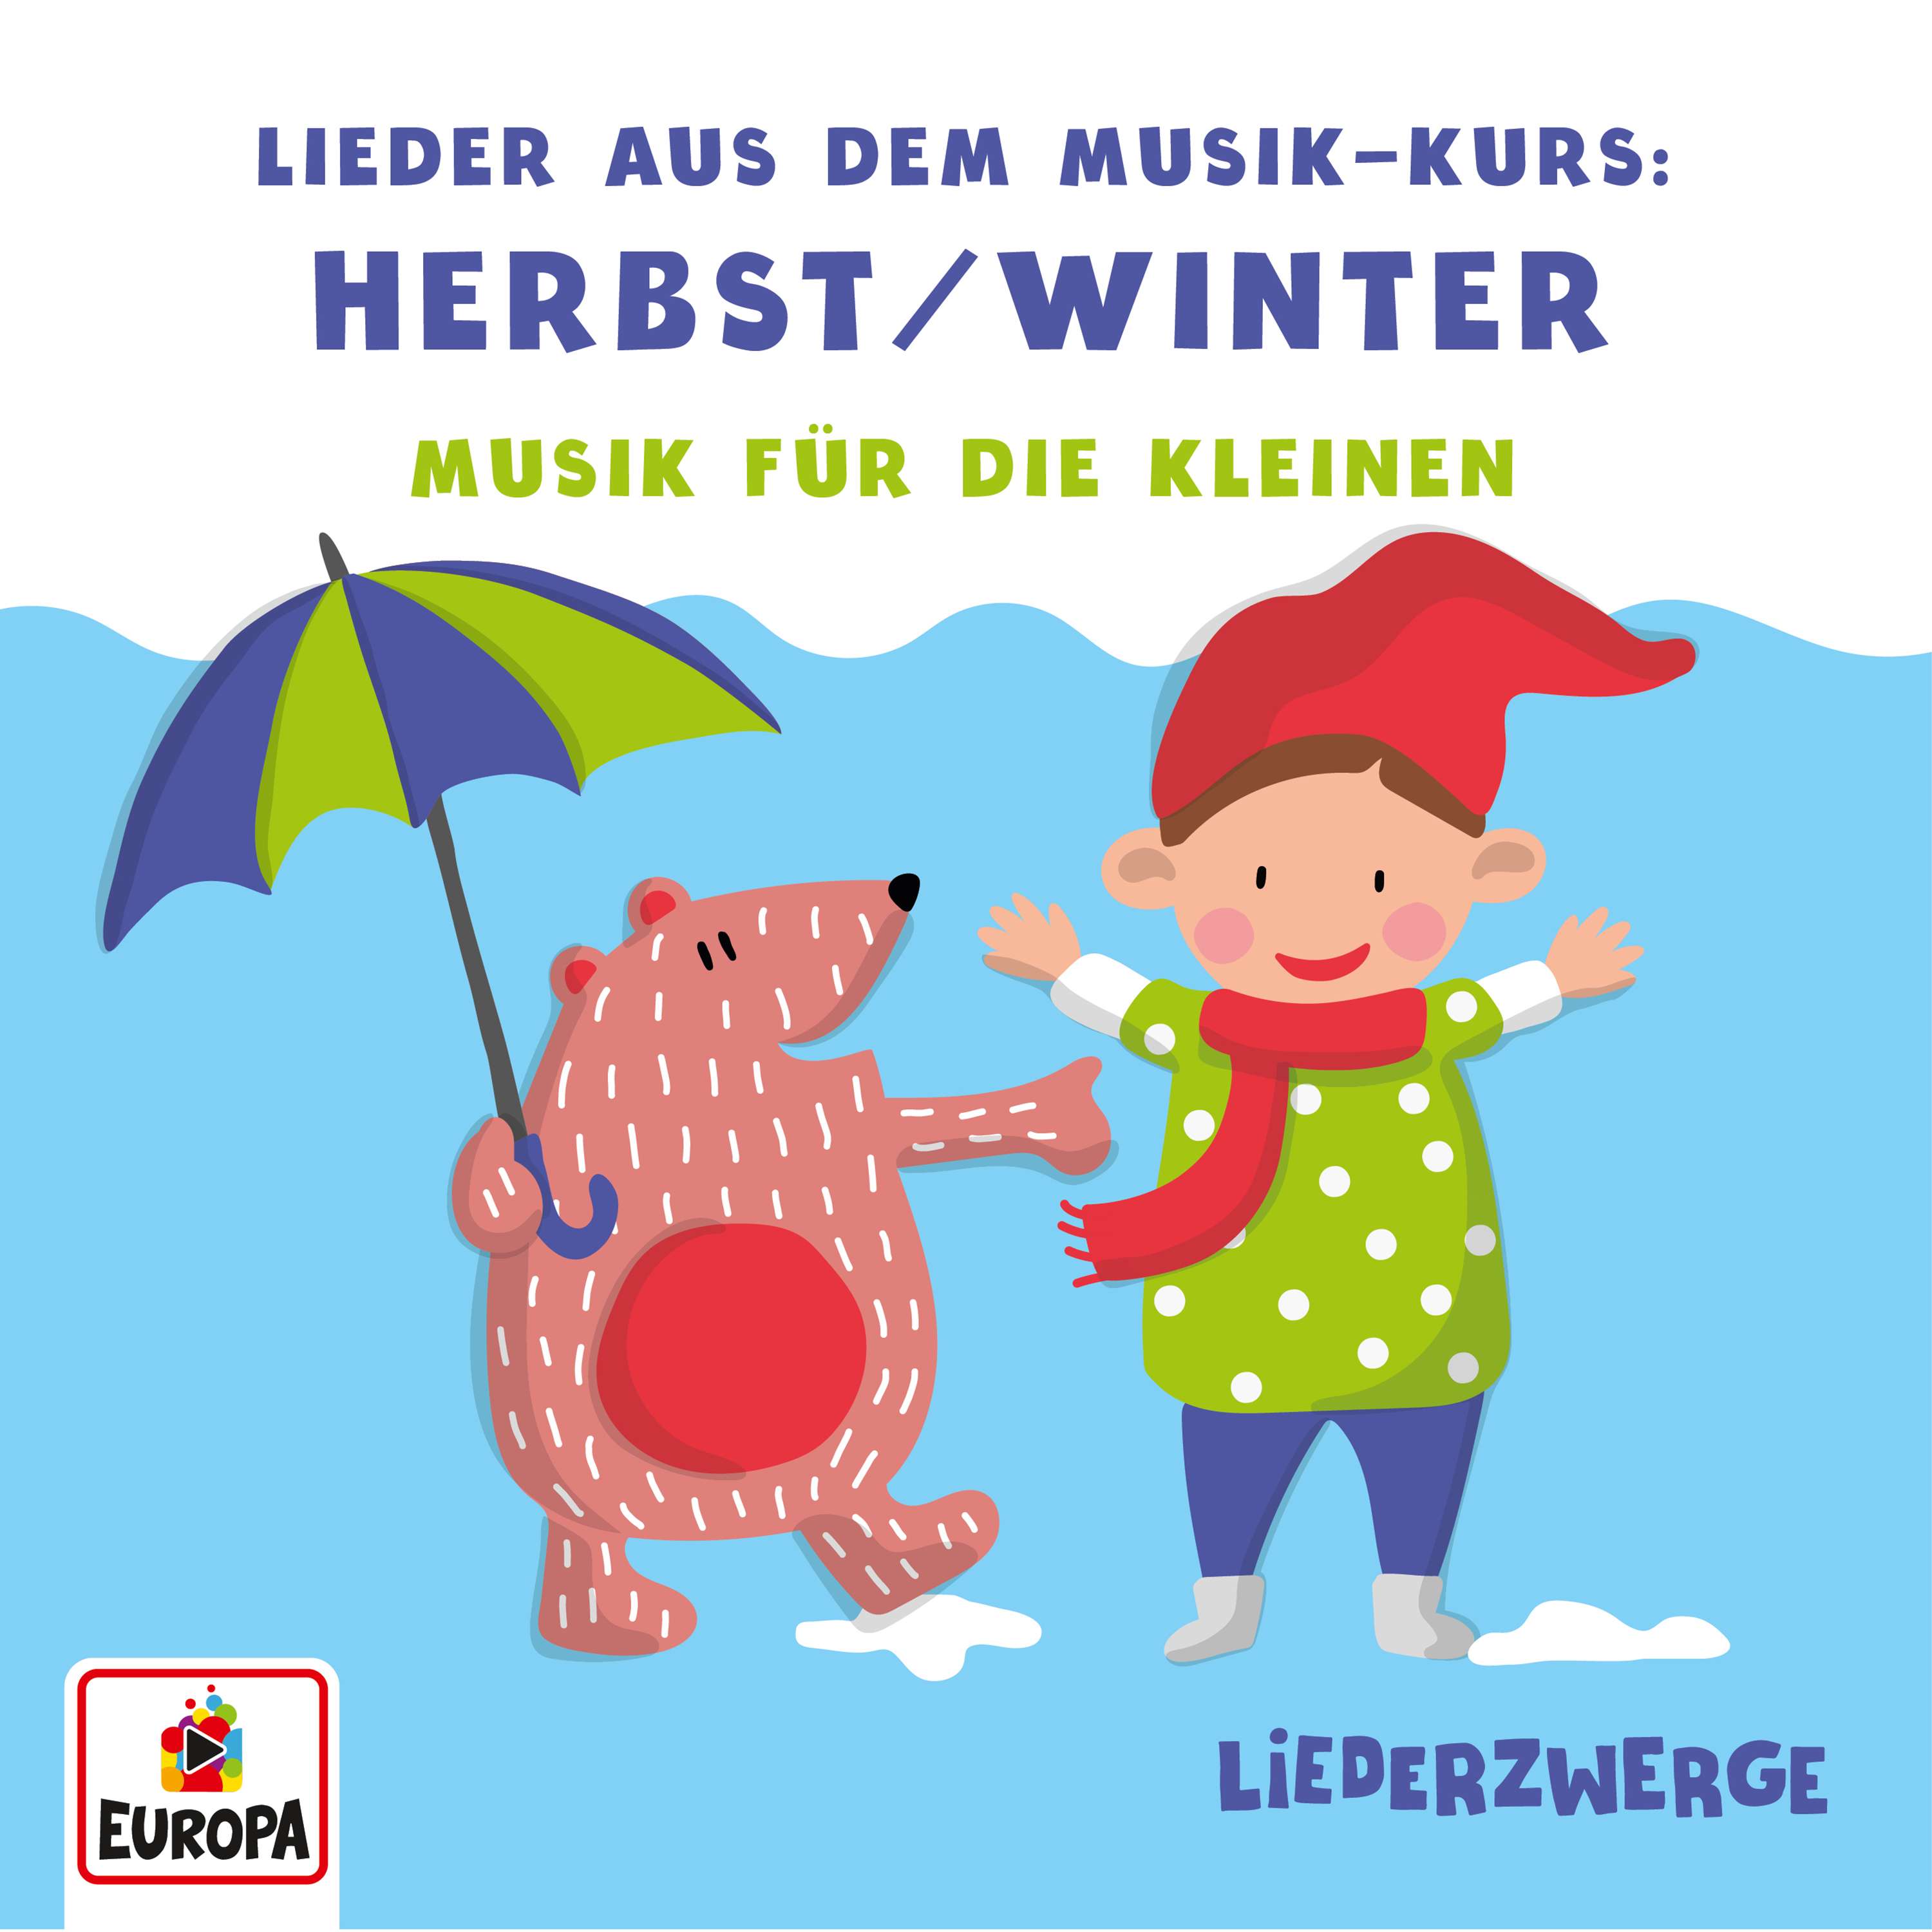 Lena, Felix & die Kita-Kids - Liederzwerge - Lieder aus dem Musik-Kurs, Vol. 1: Herbst/Winter